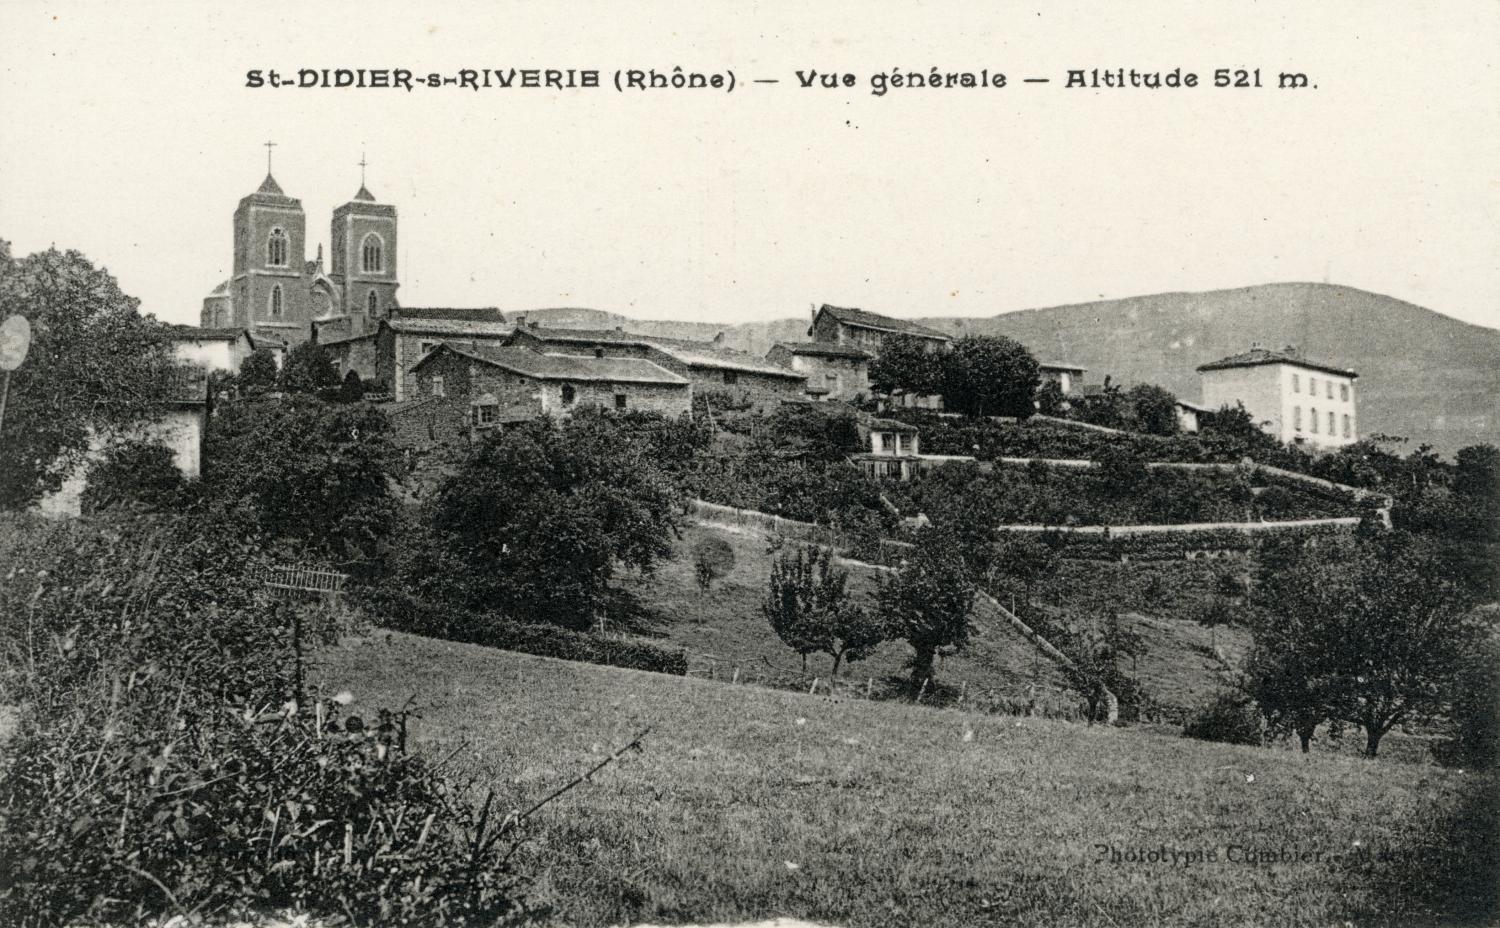 St-Didier-sous-Riverie (Rhône). - Vue générale. - Altitude 521 m.